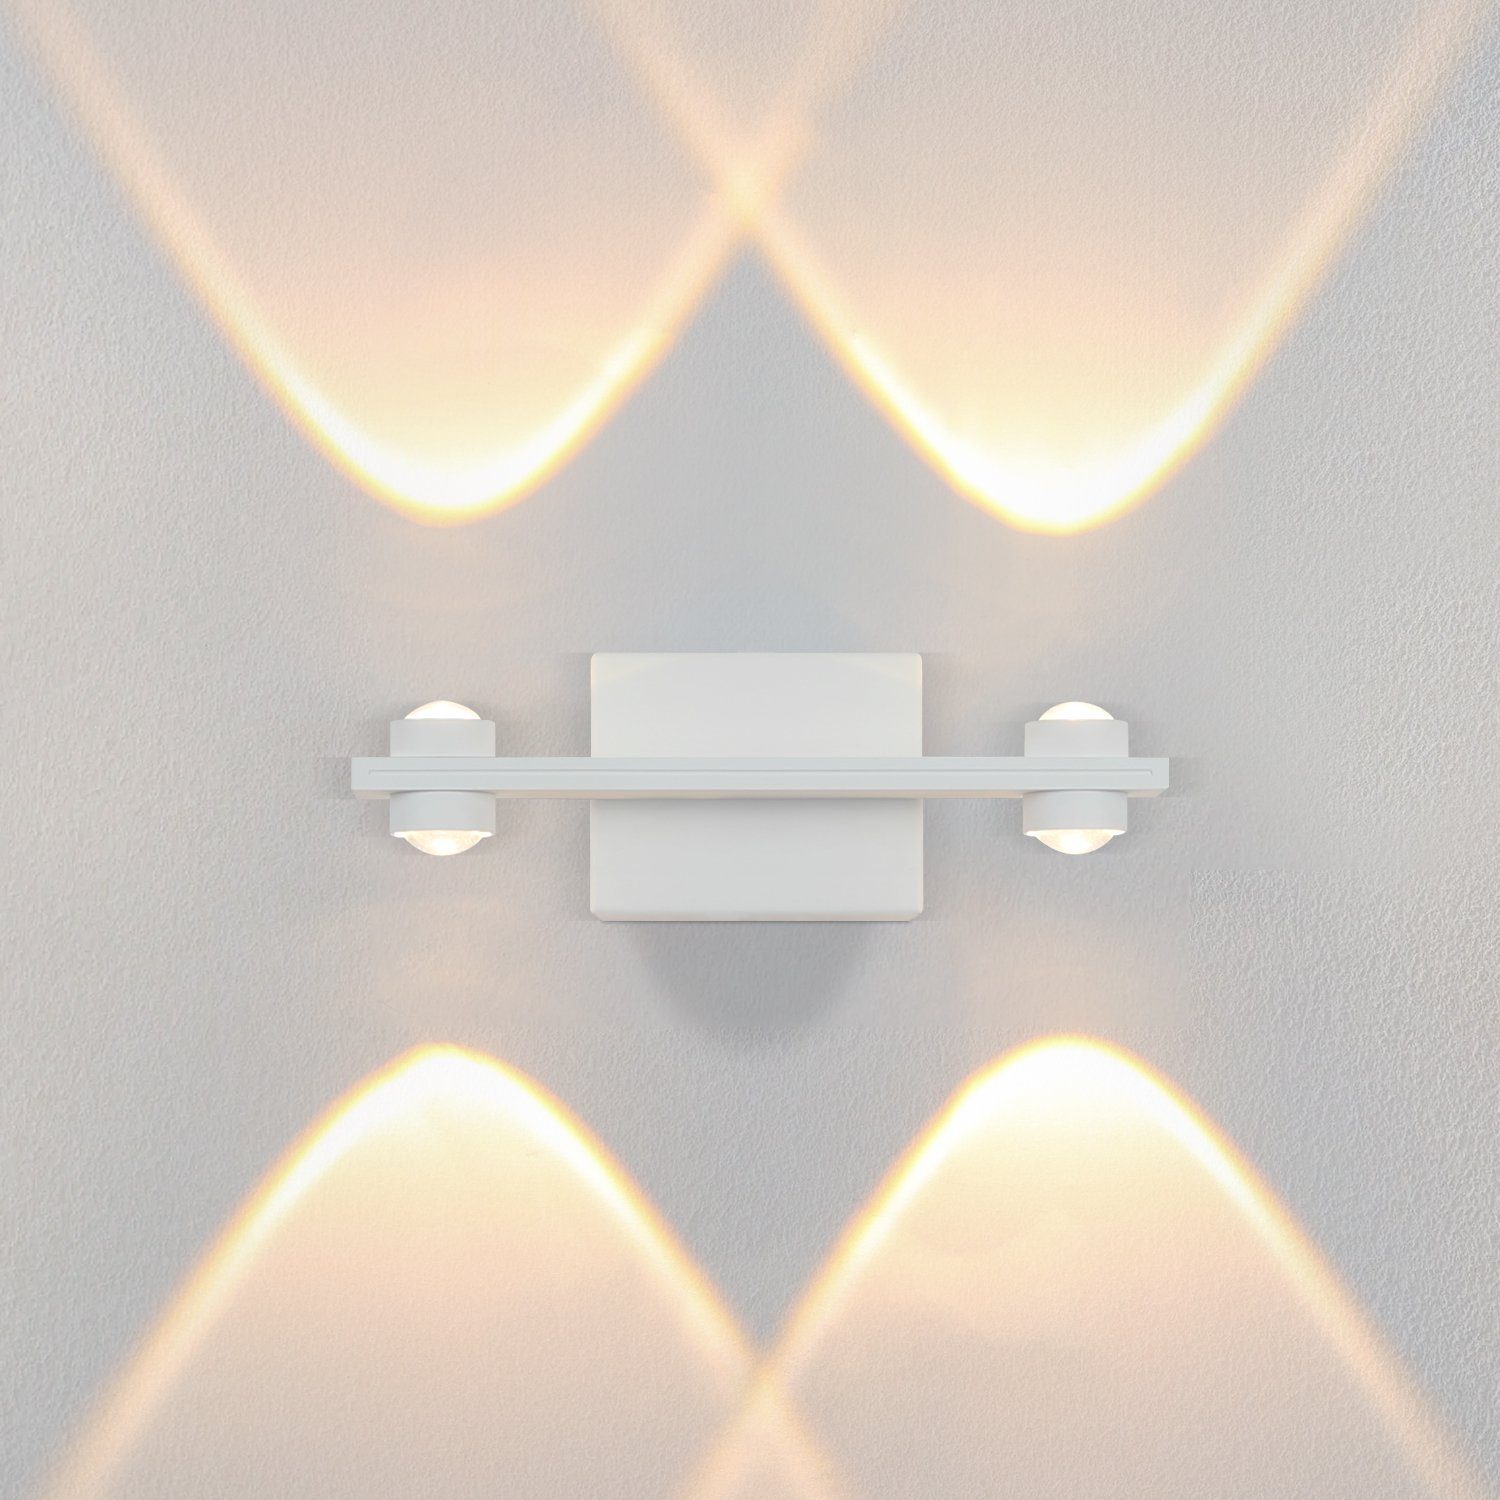 ZMH LED Wandleuchte innen Wandlampe Modern Wohnzimmer Wandbeleuchtung 3000K, Warmweiss Weiß